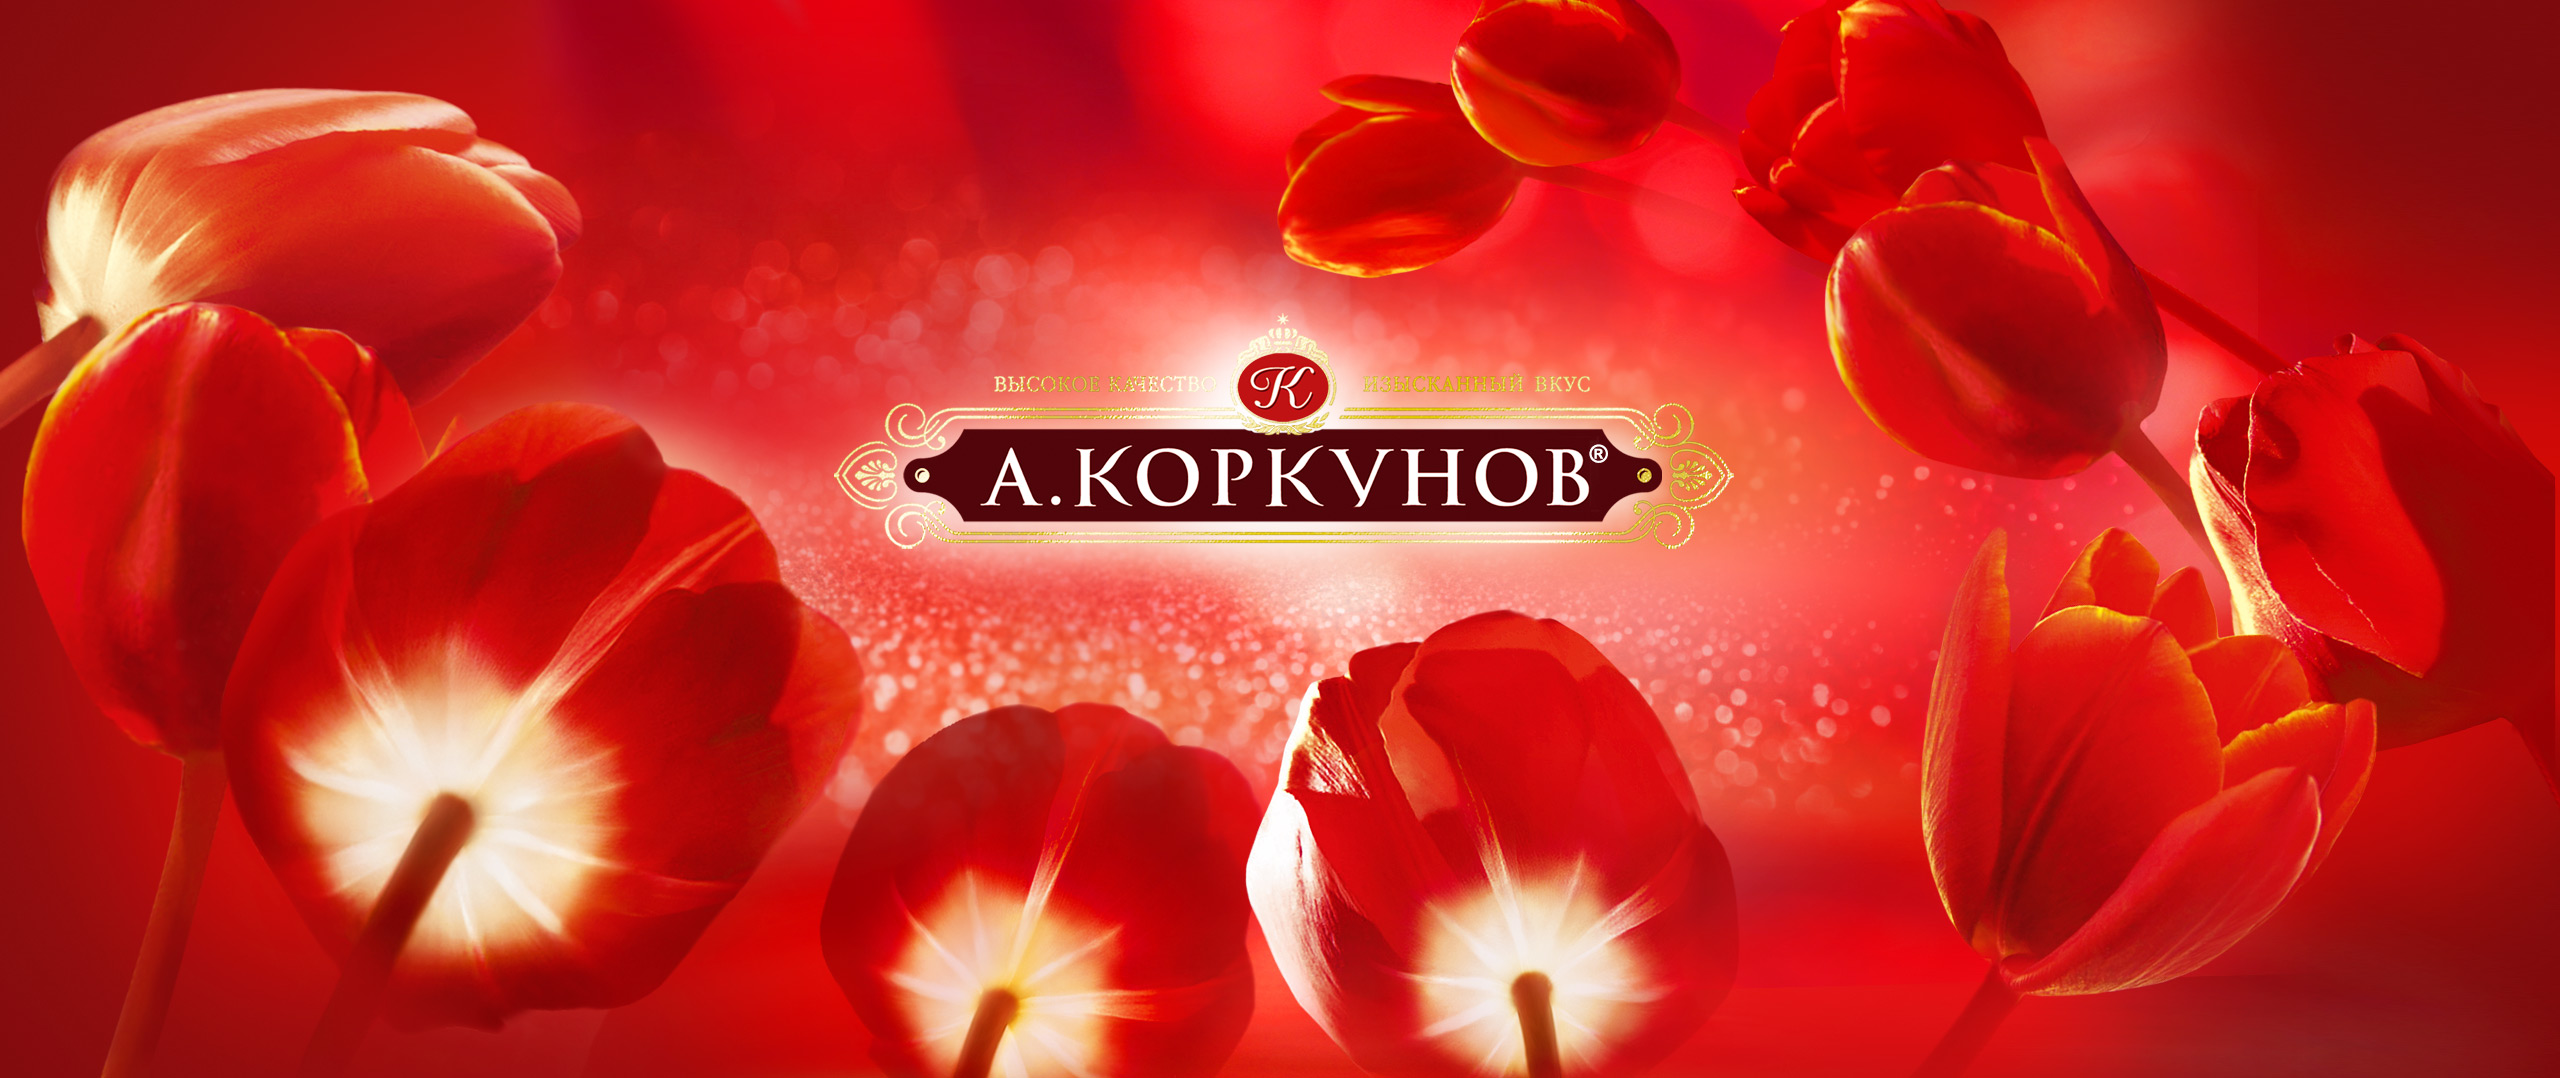 korkunov-spring-01.jpg